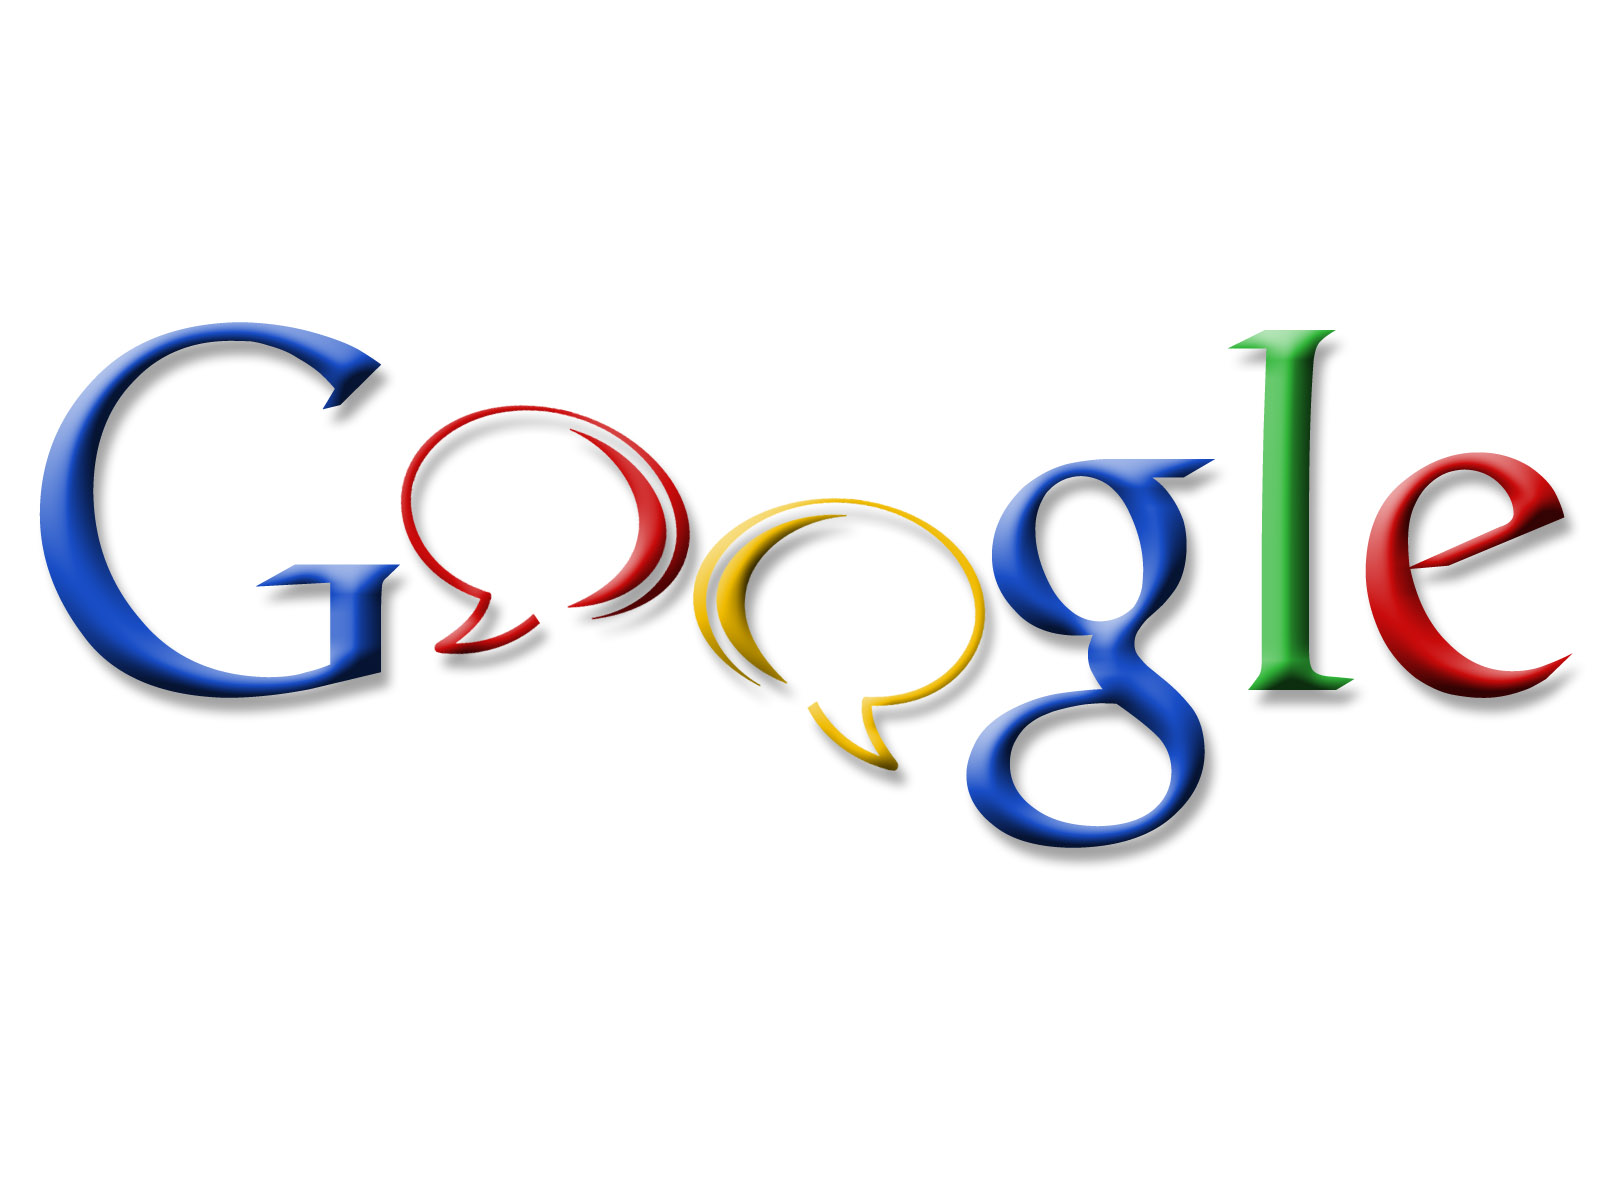 Гугл картинки. Гугл. Логотип гугл. Гугл без фона. Логотип гугл на прозрачном фоне.